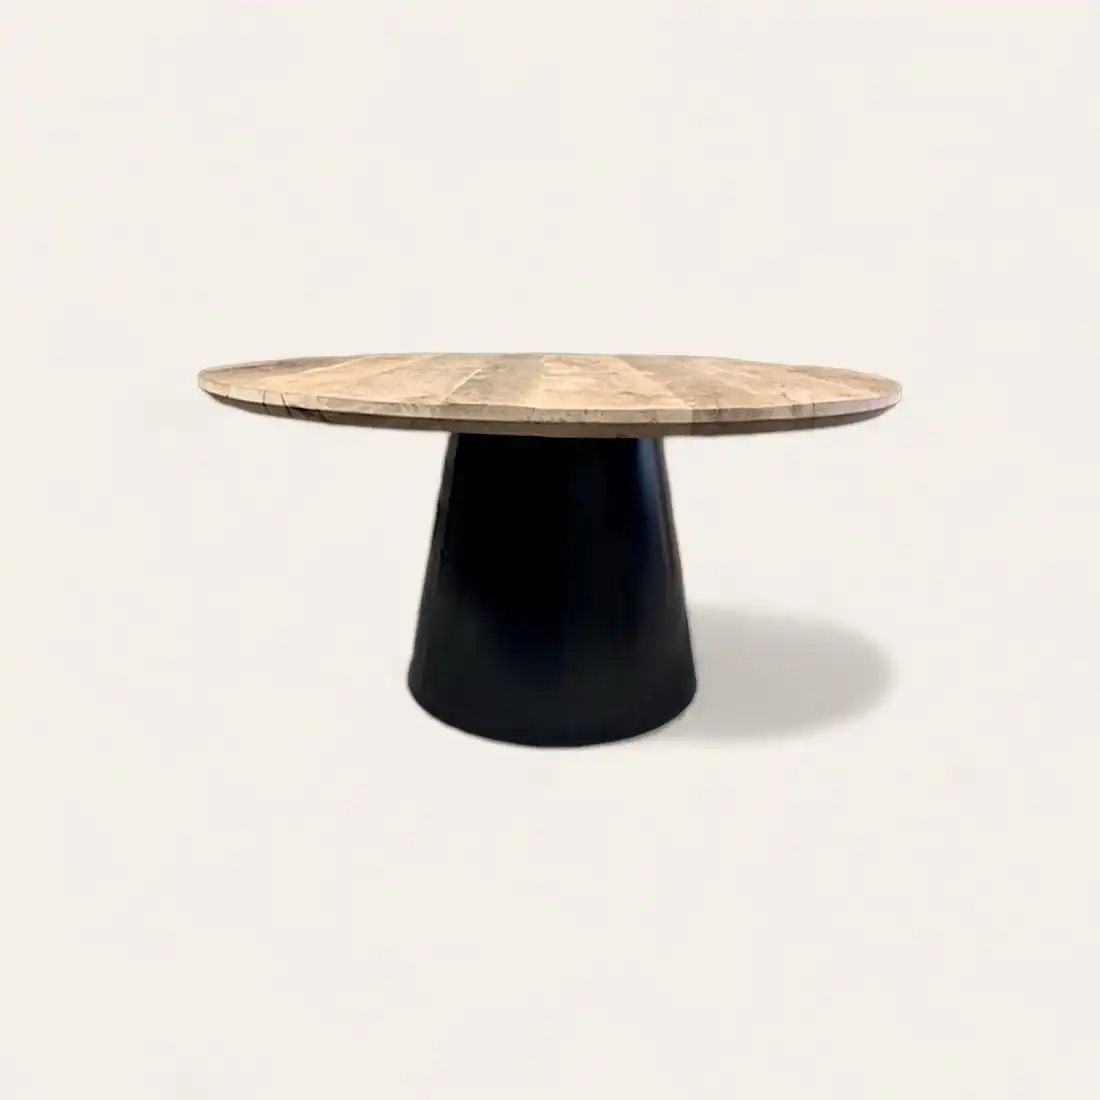  Une table ronde en bois ancien avec une base noire sur fond blanc. 